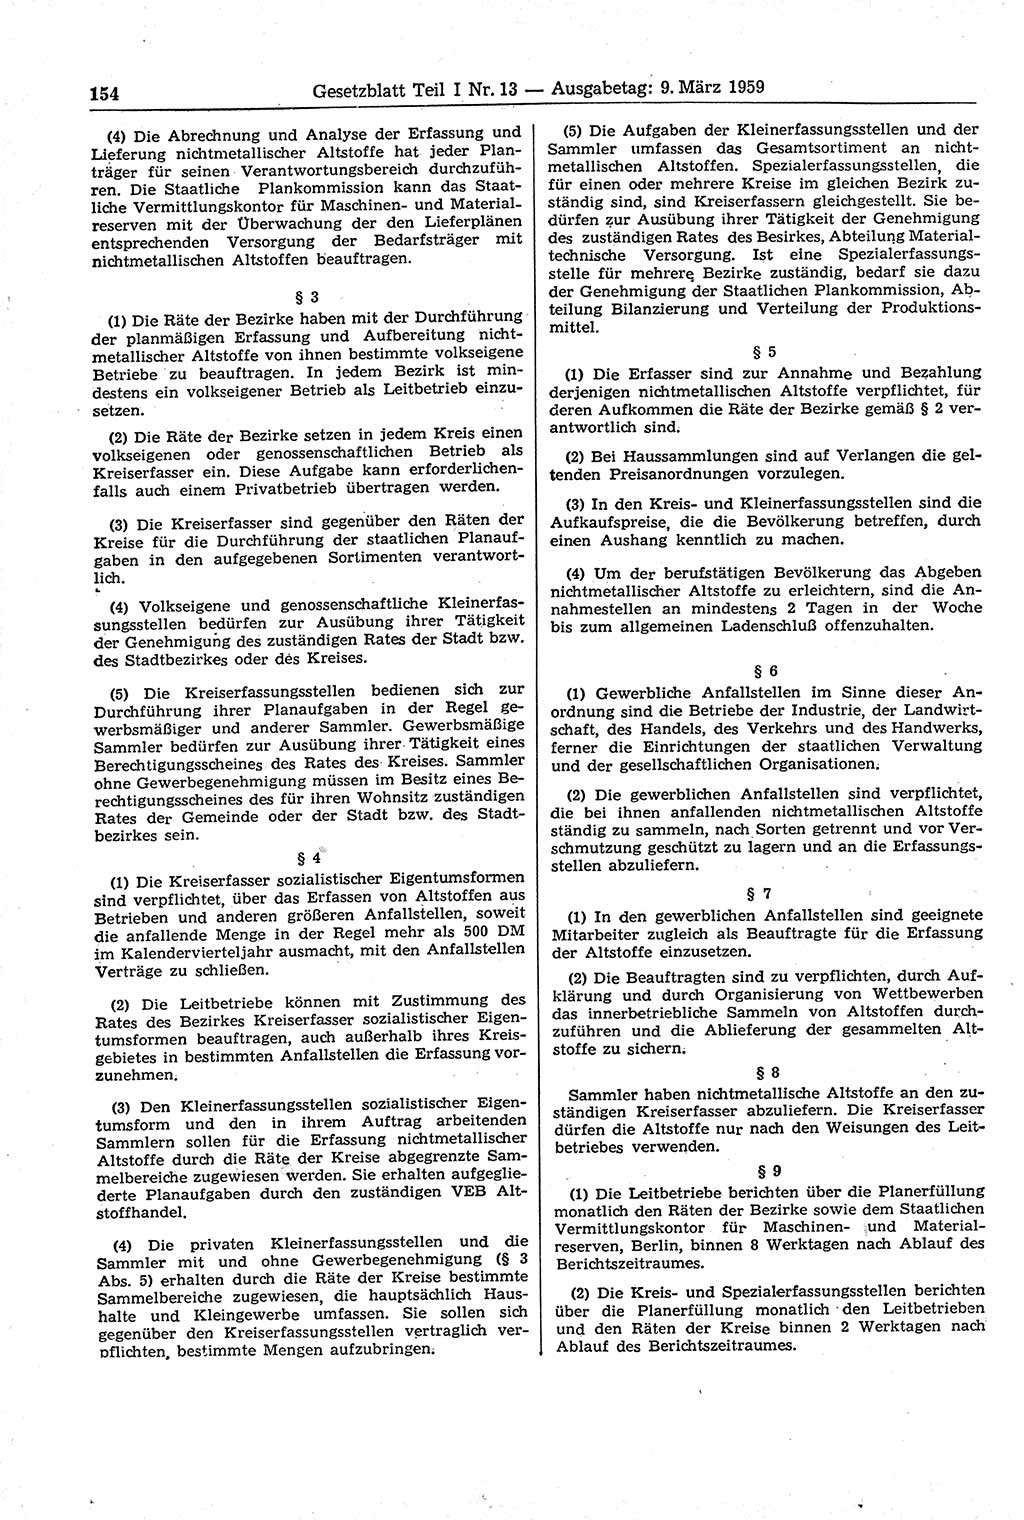 Gesetzblatt (GBl.) der Deutschen Demokratischen Republik (DDR) Teil Ⅰ 1959, Seite 154 (GBl. DDR Ⅰ 1959, S. 154)